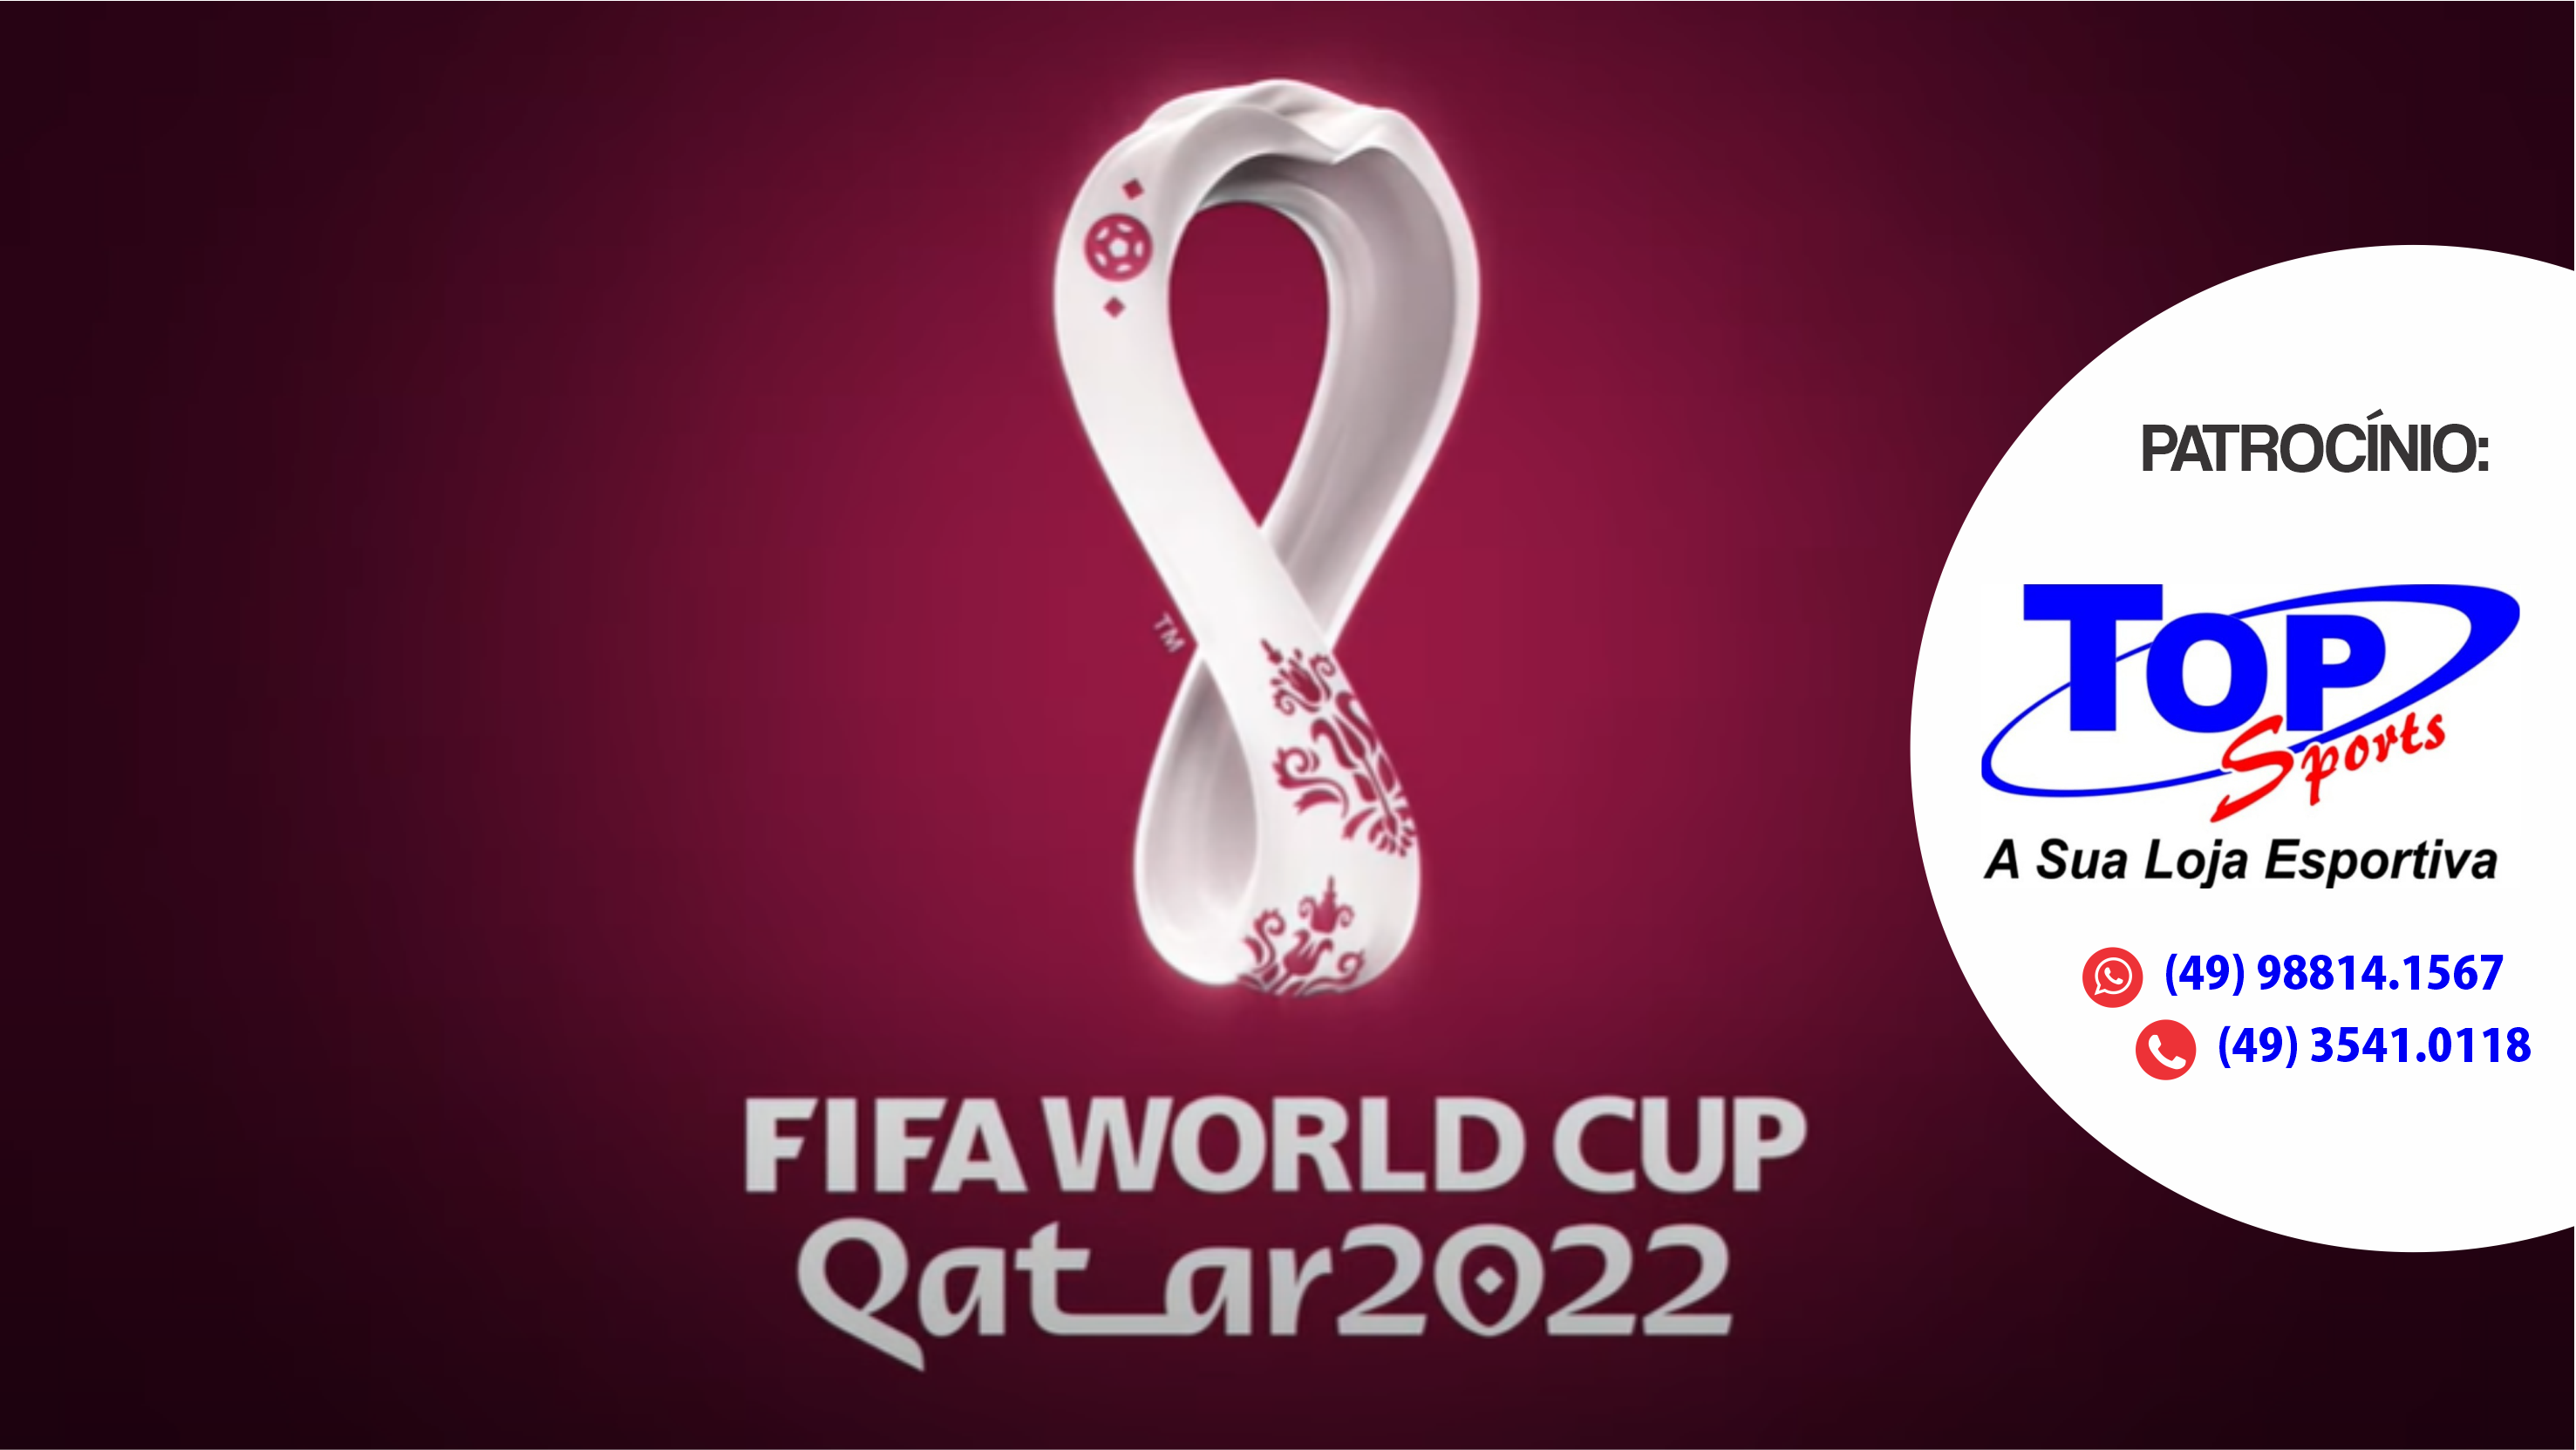 Horário de funcionamento especial – Copa do mundo 2022 - Sindsifce